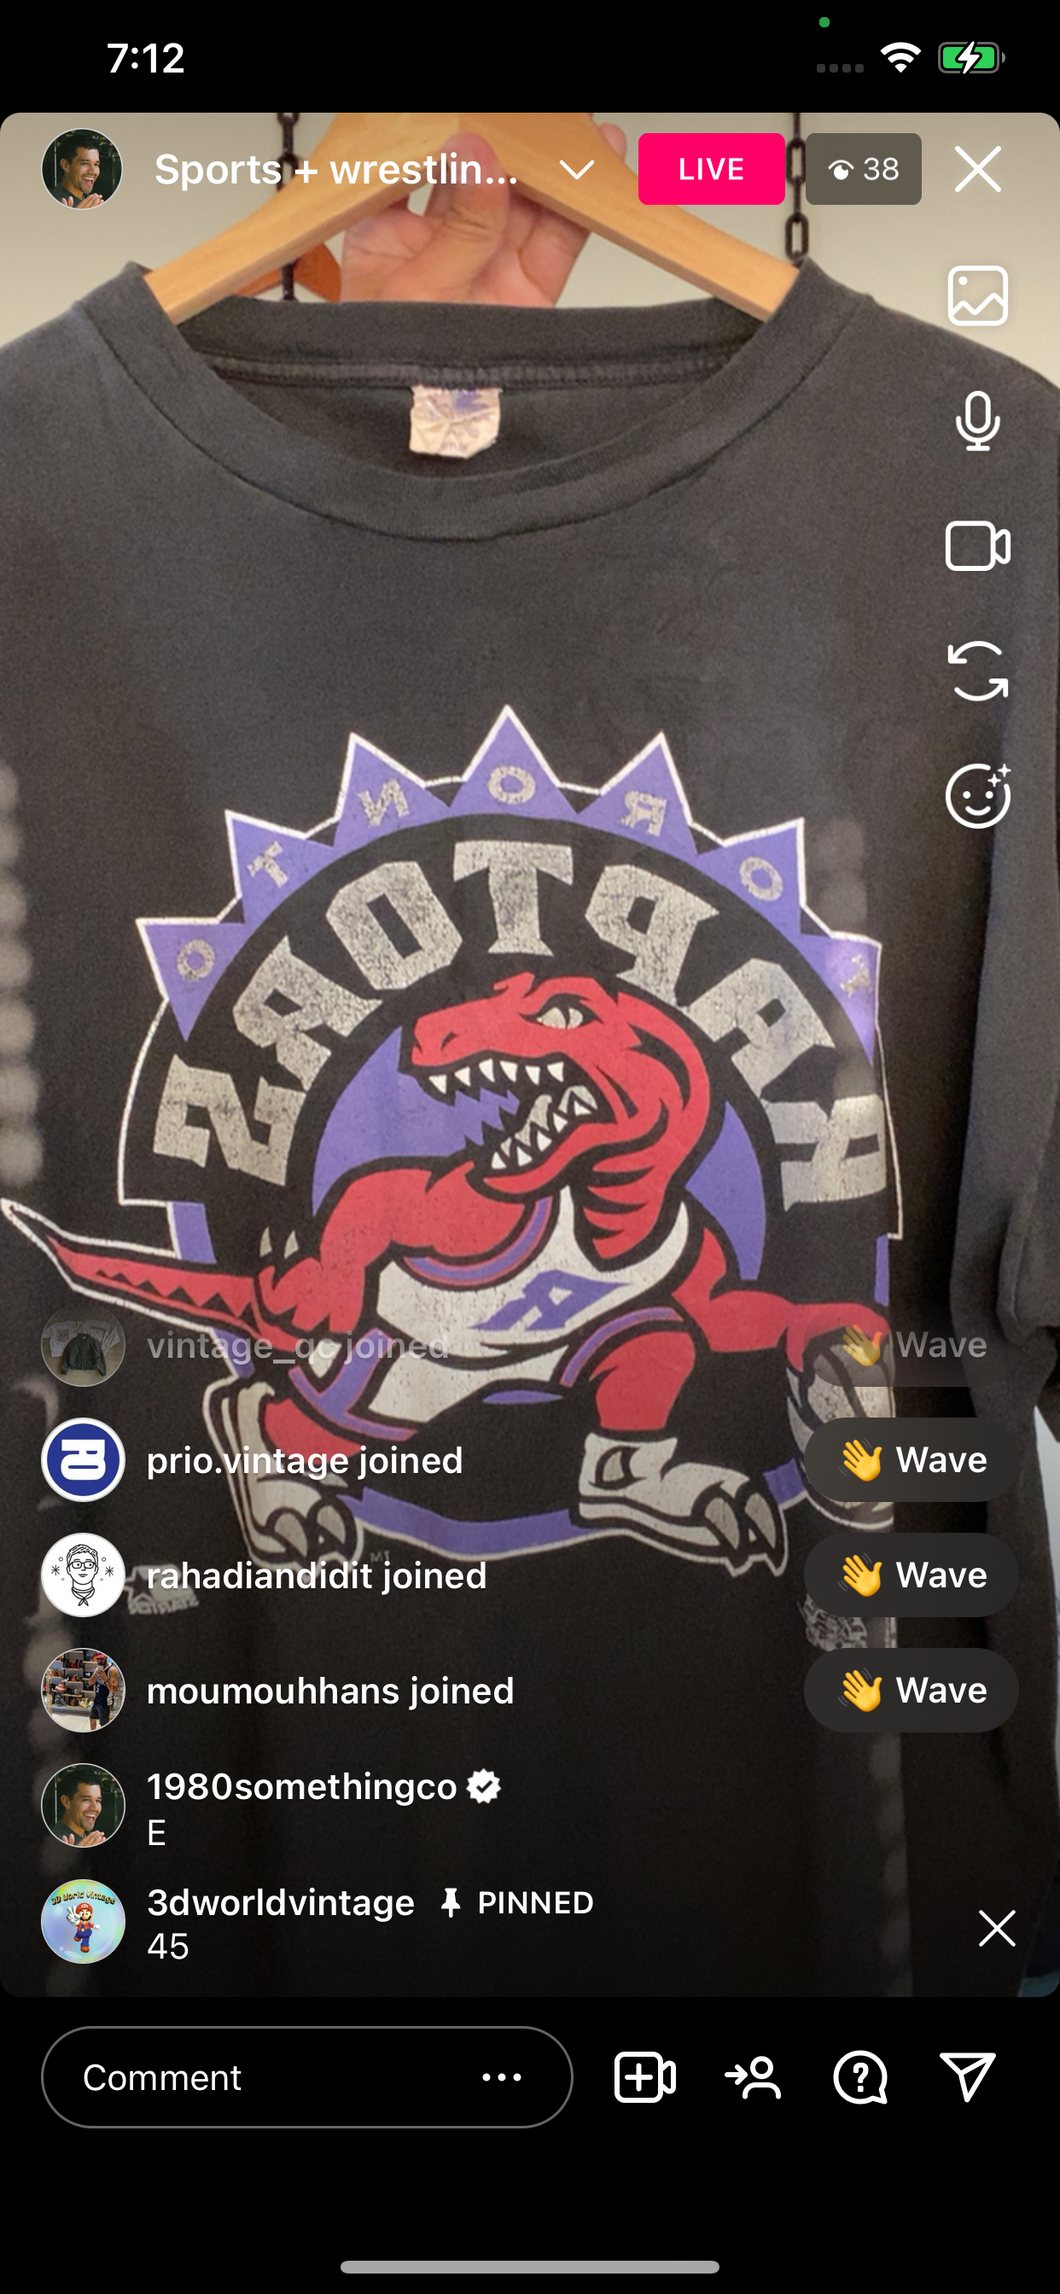 Vtg Raptors shirt (secondhand)